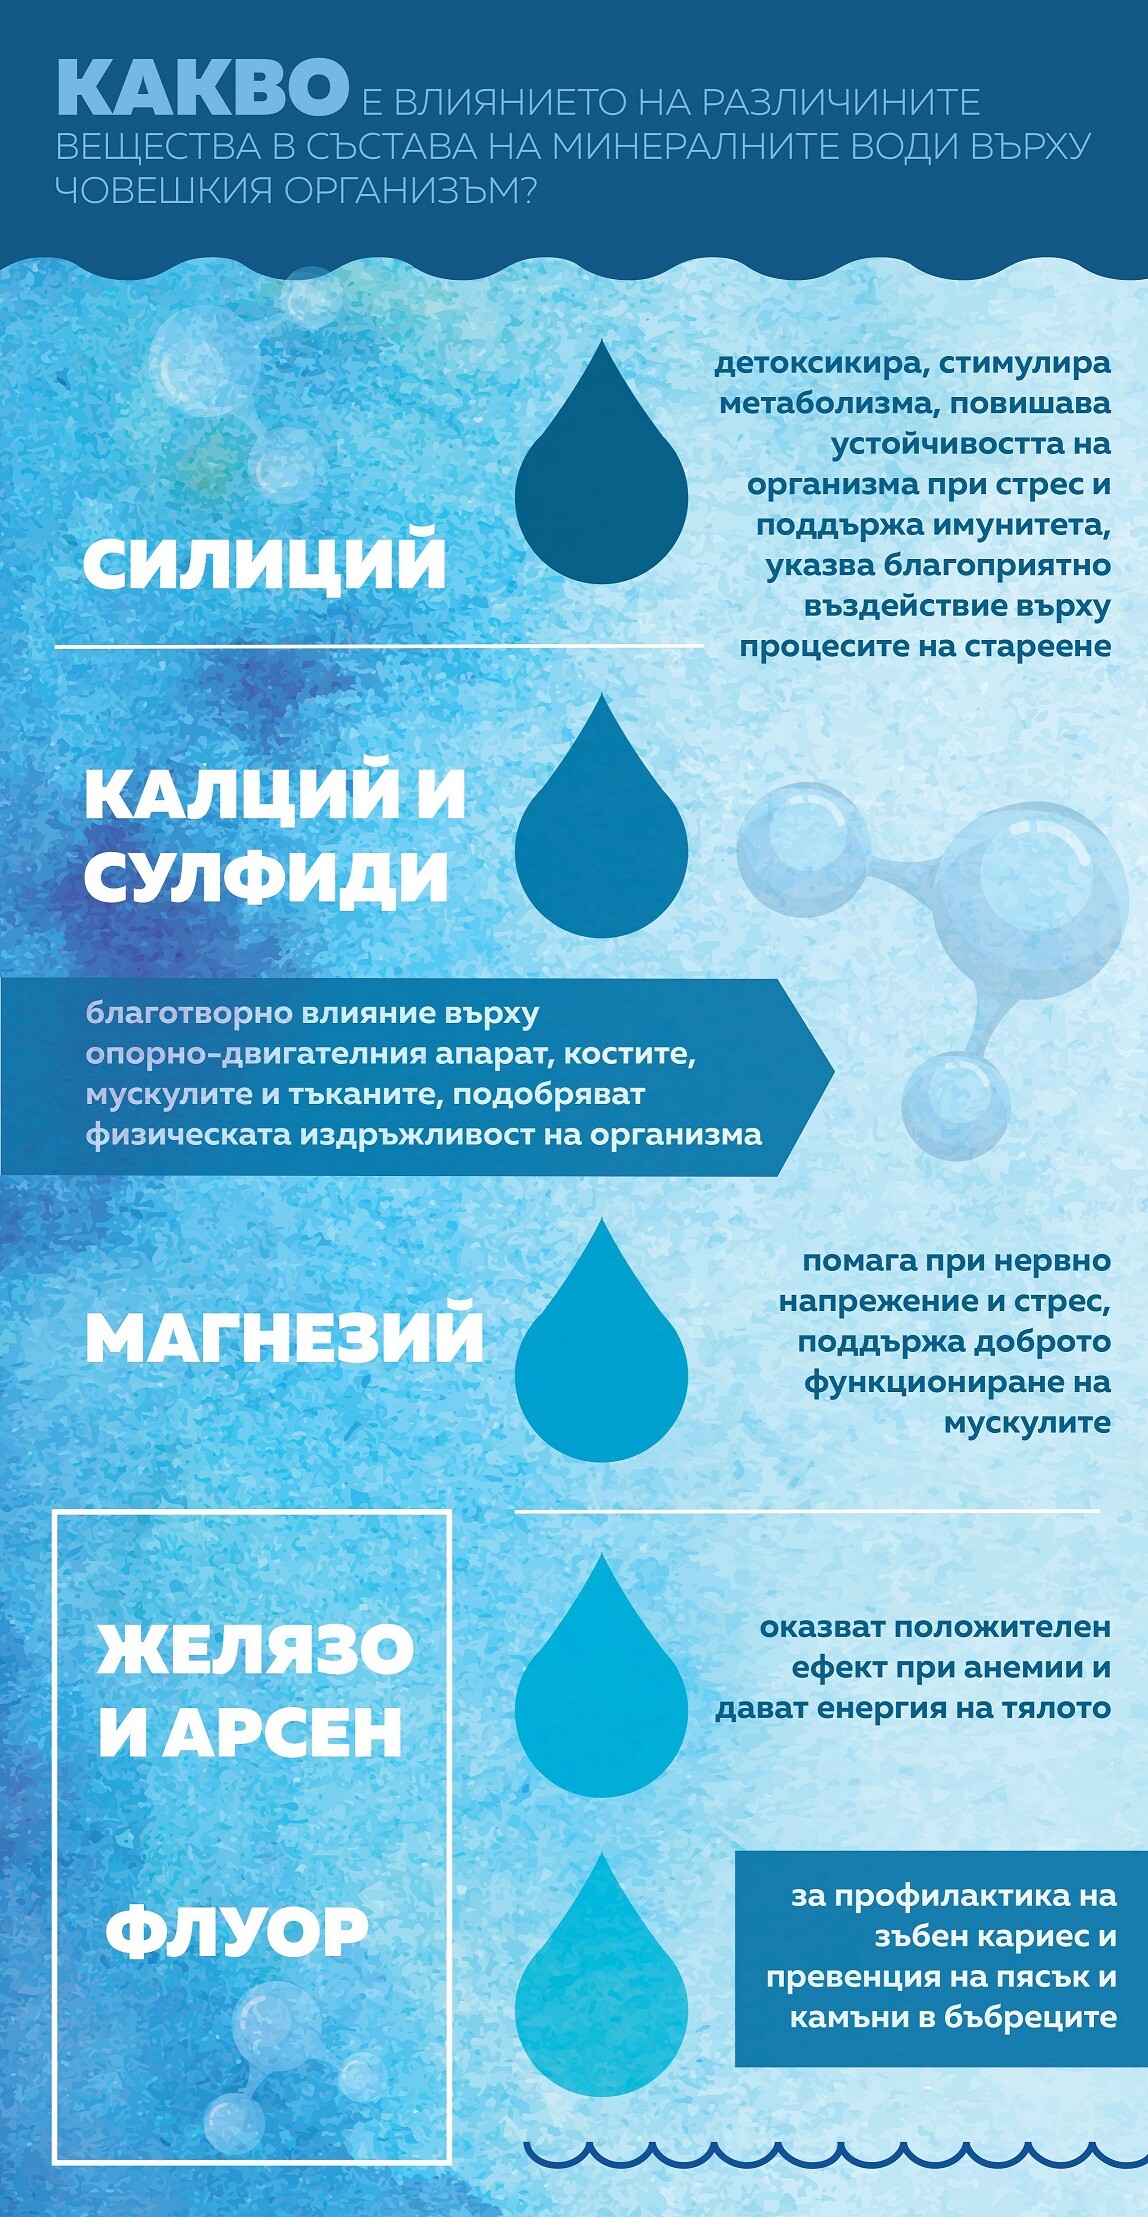 Минералните води в България